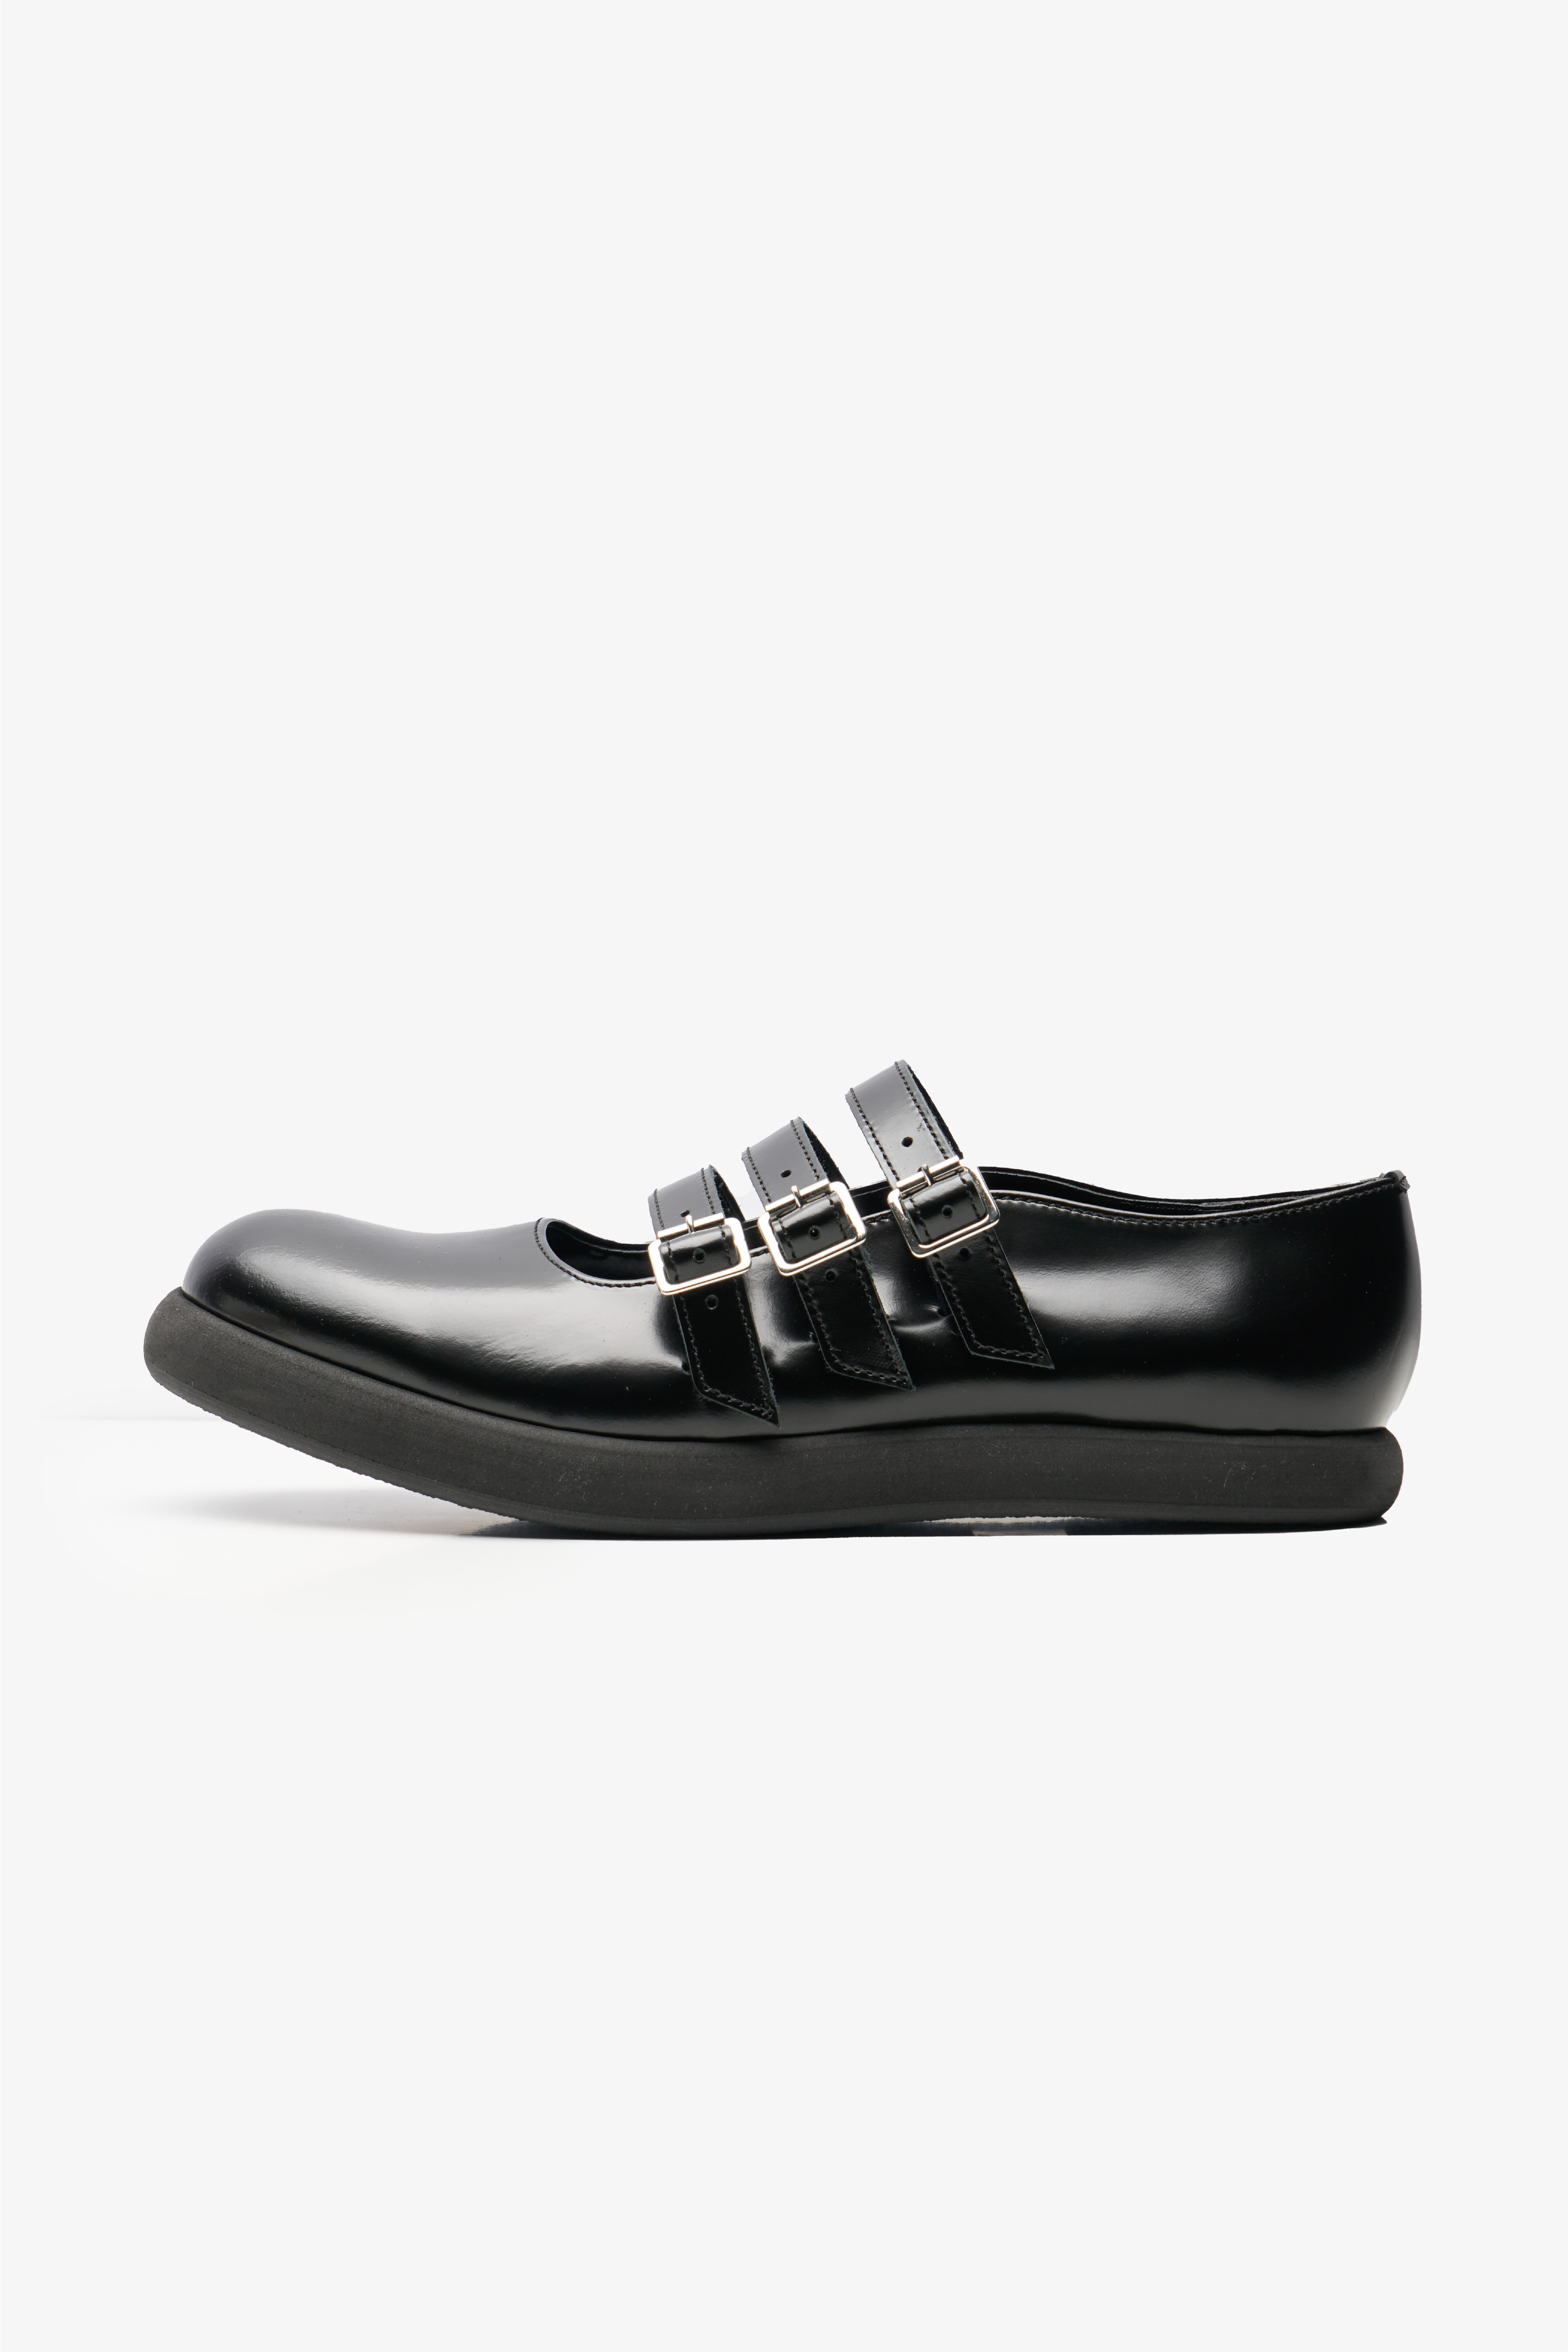 Selectshop FRAME - COMME DES GARÇONS TRICOT Shoes Footwear Dubai